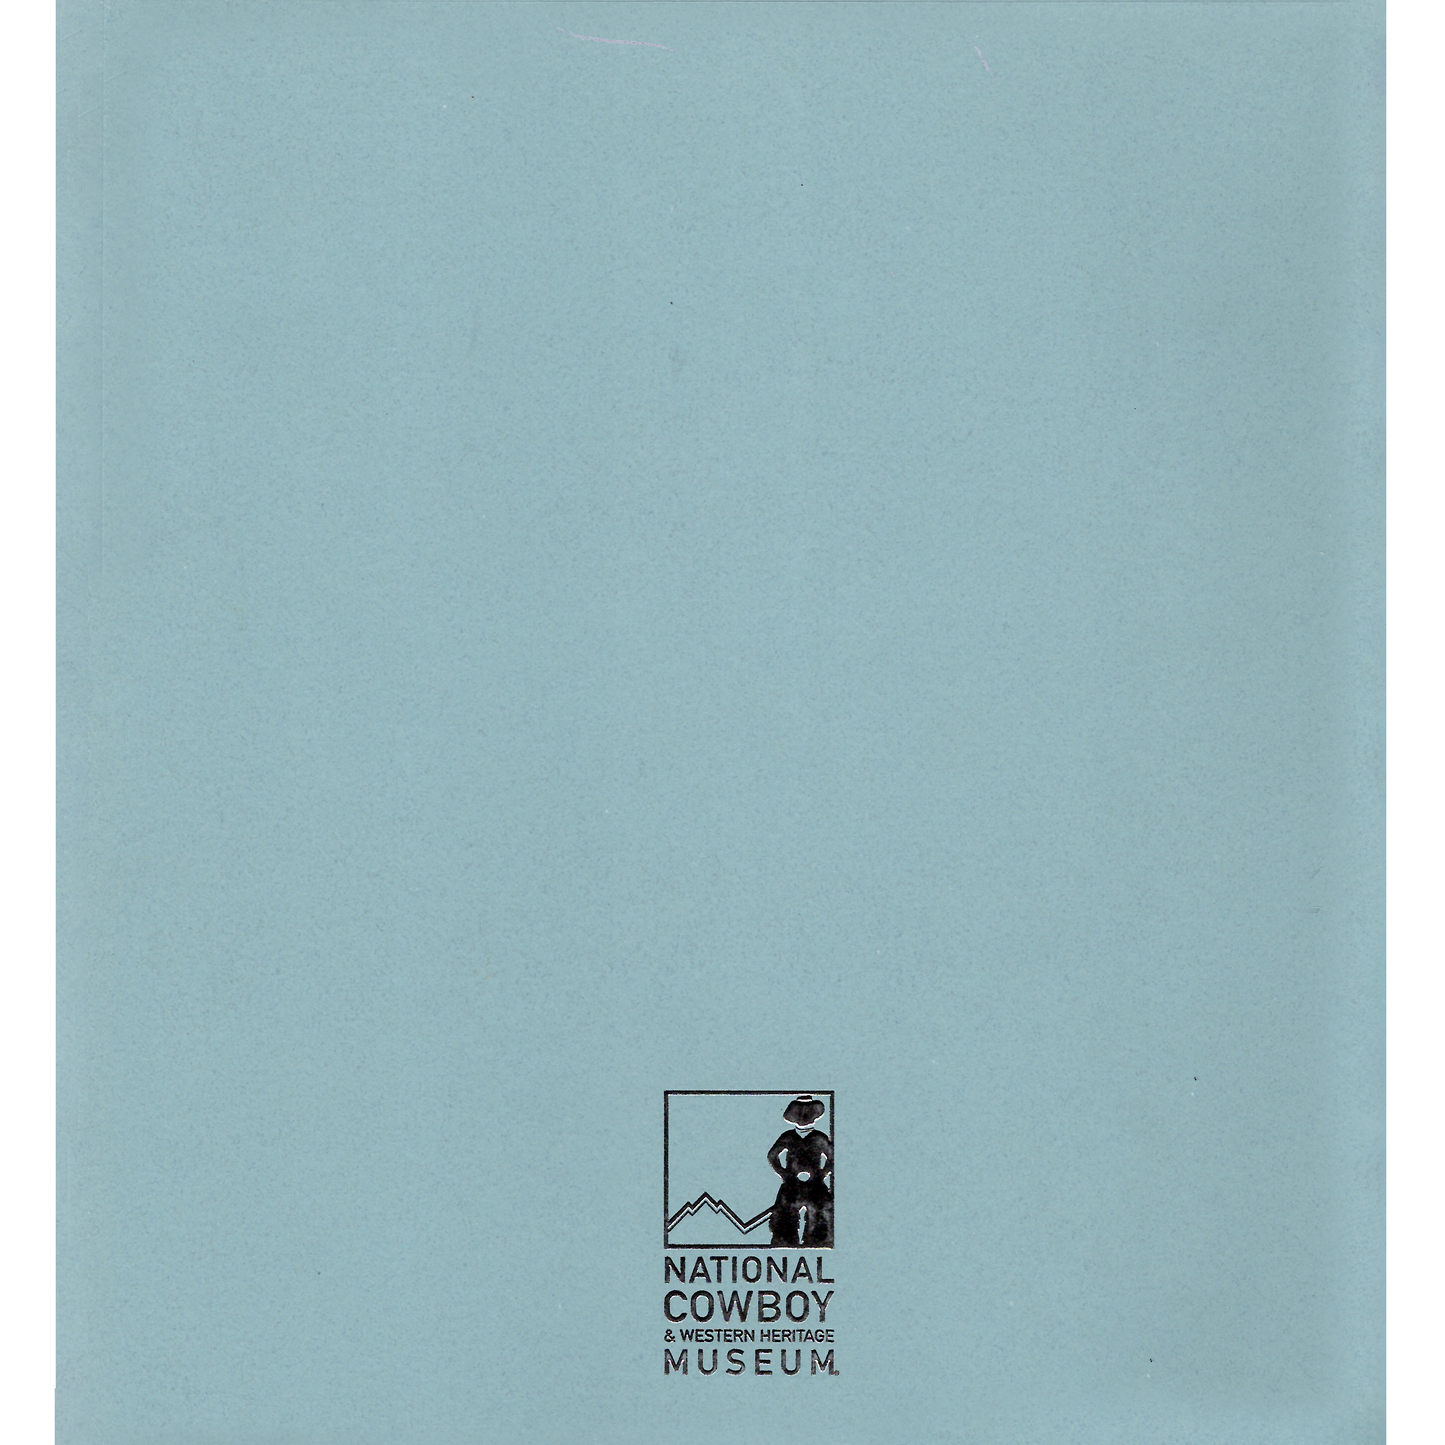 2009 Prix de West Exhibition Catalog